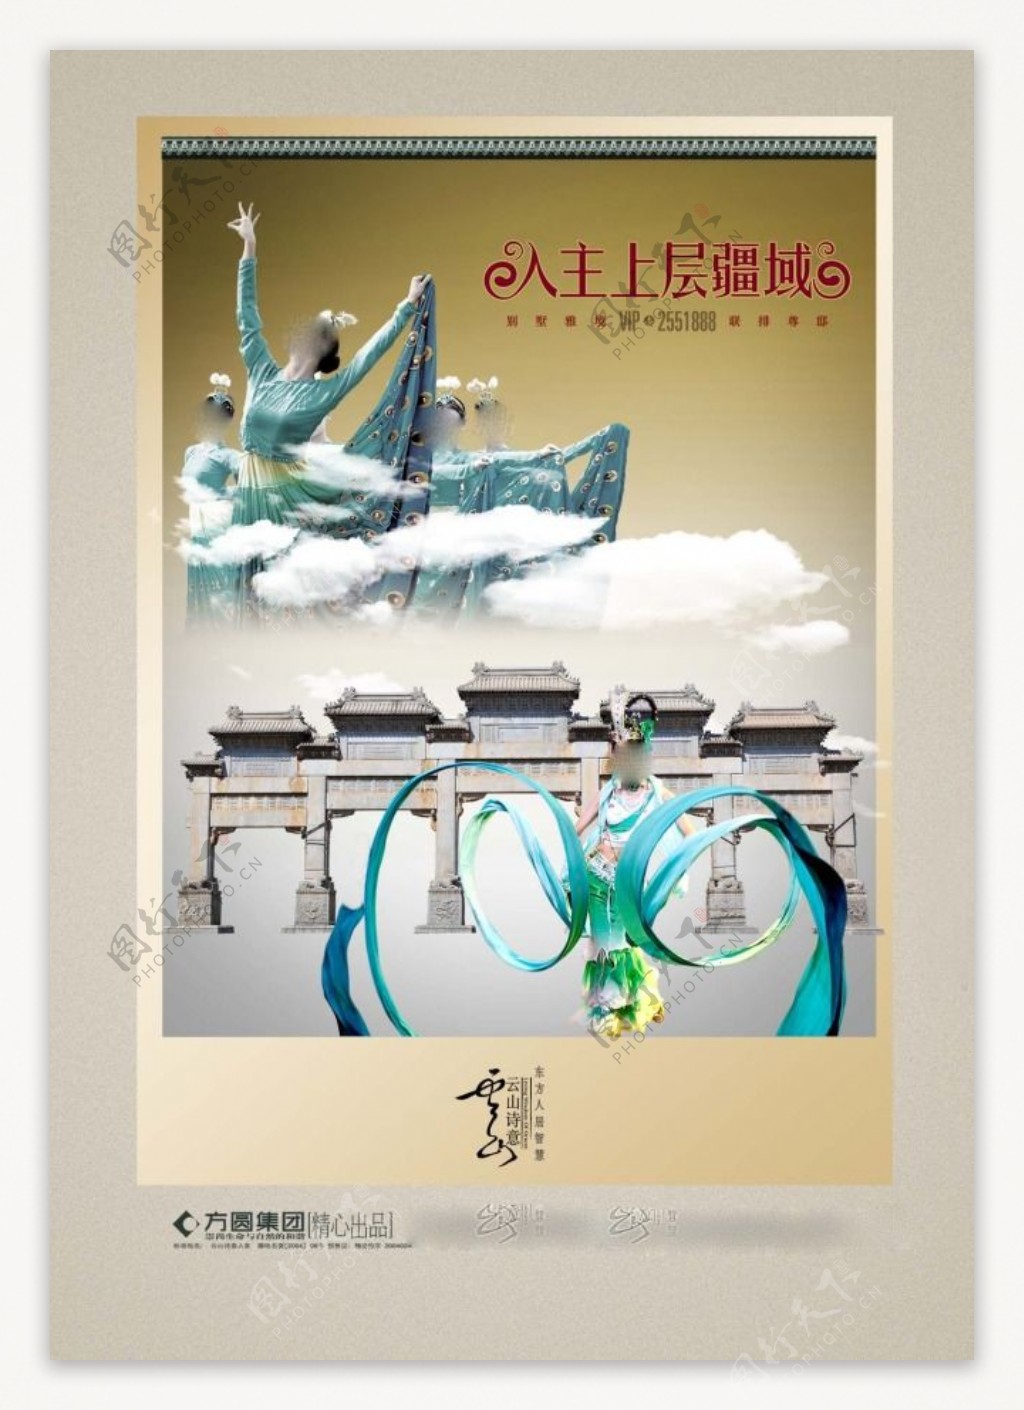 中国风海报设计入主上层疆域牌坊舞蹈